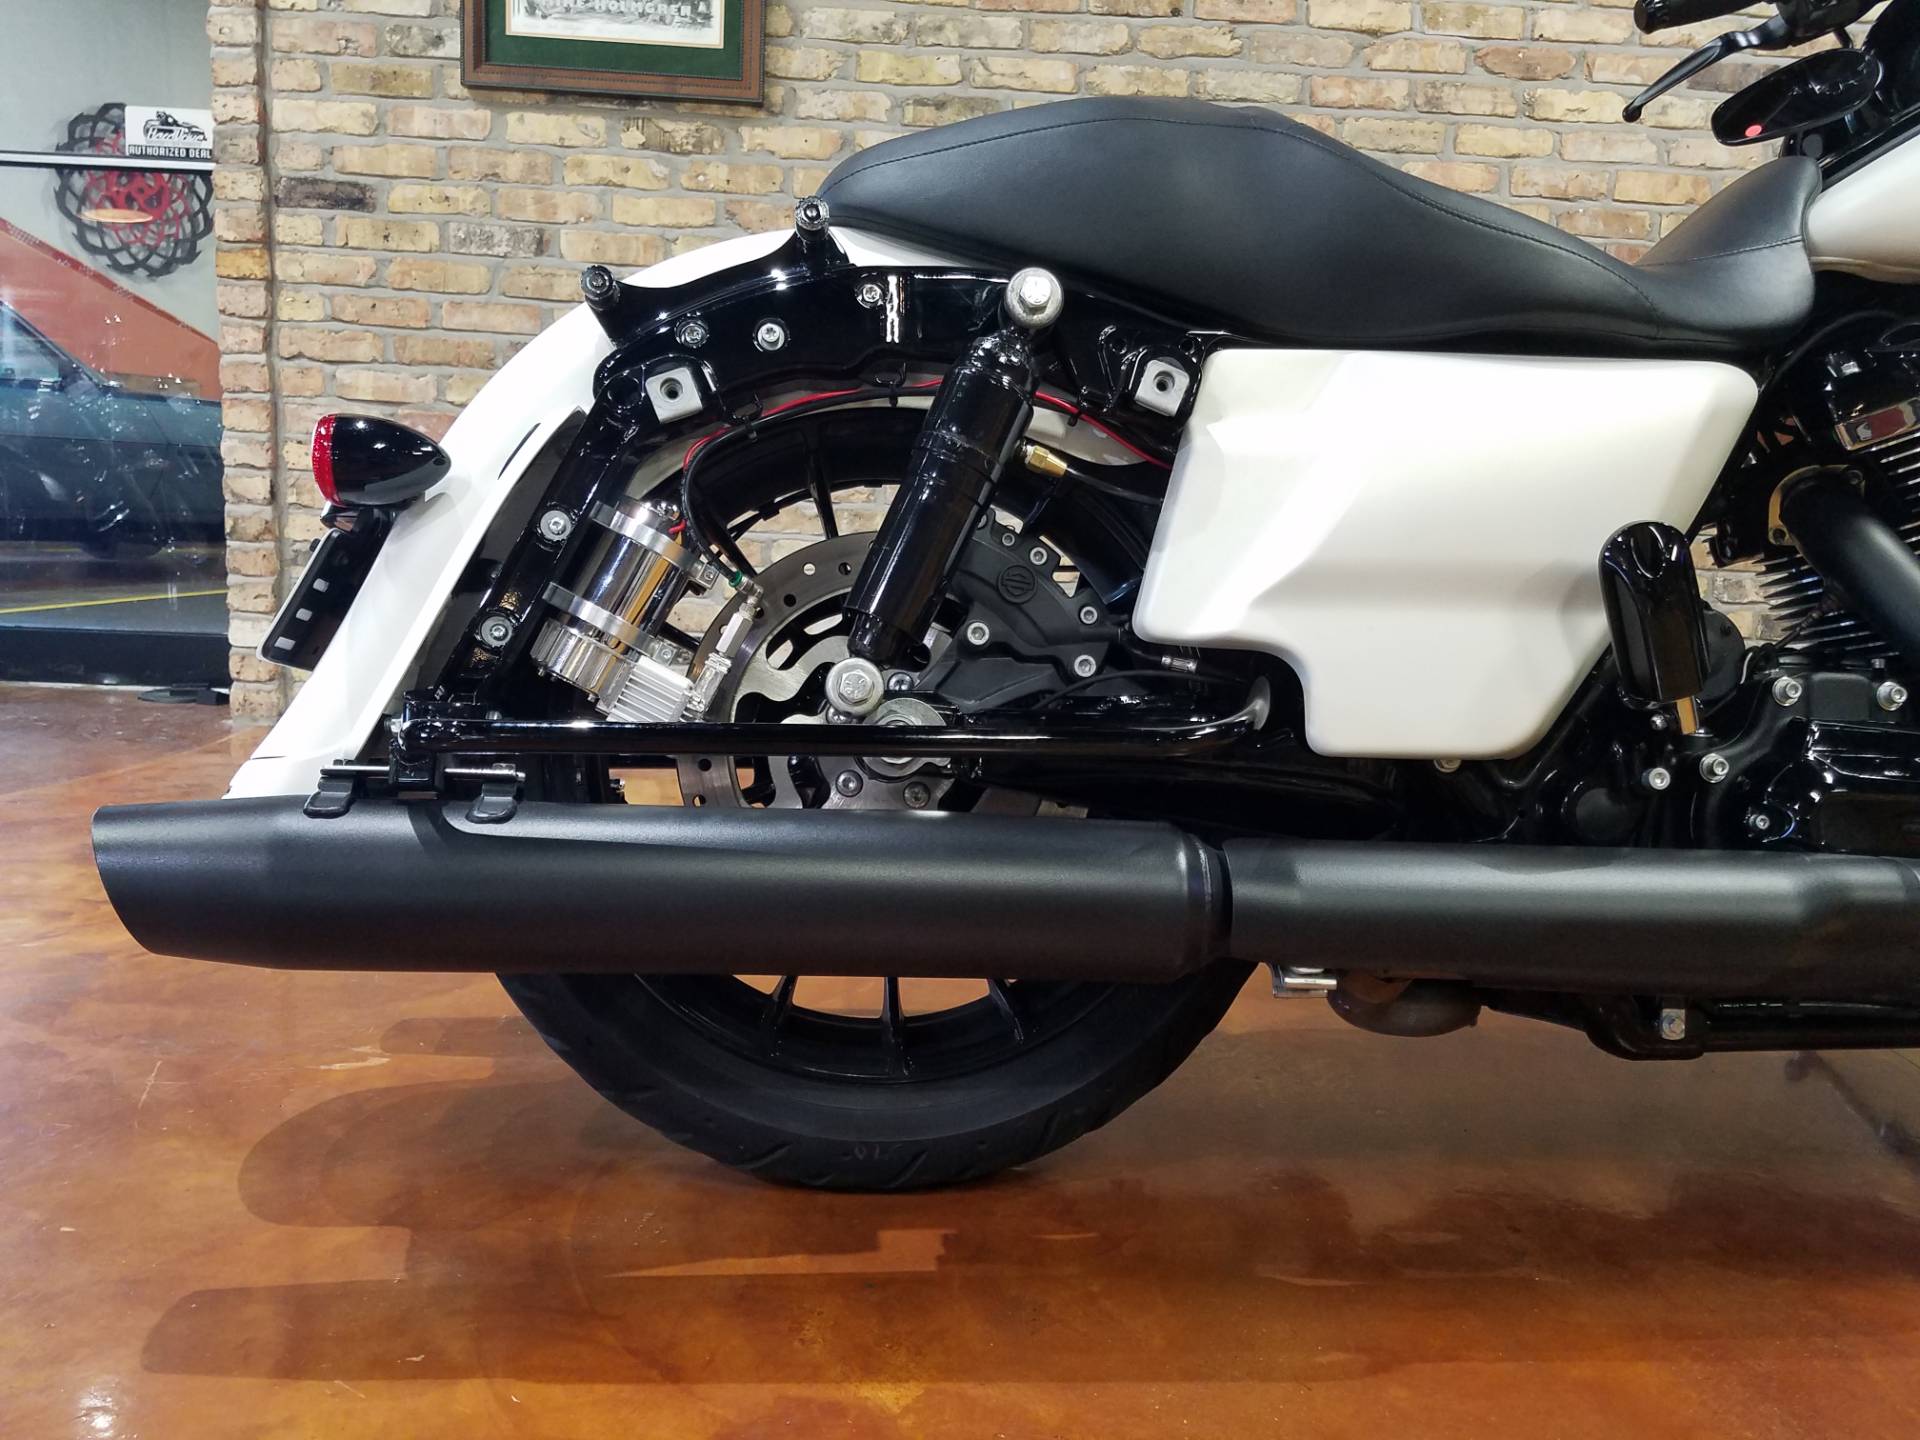 Used 2018 Harley Davidson Street Glide Special Motorcycles In Big Bend Wi 4268 Bonneville Salt Denim